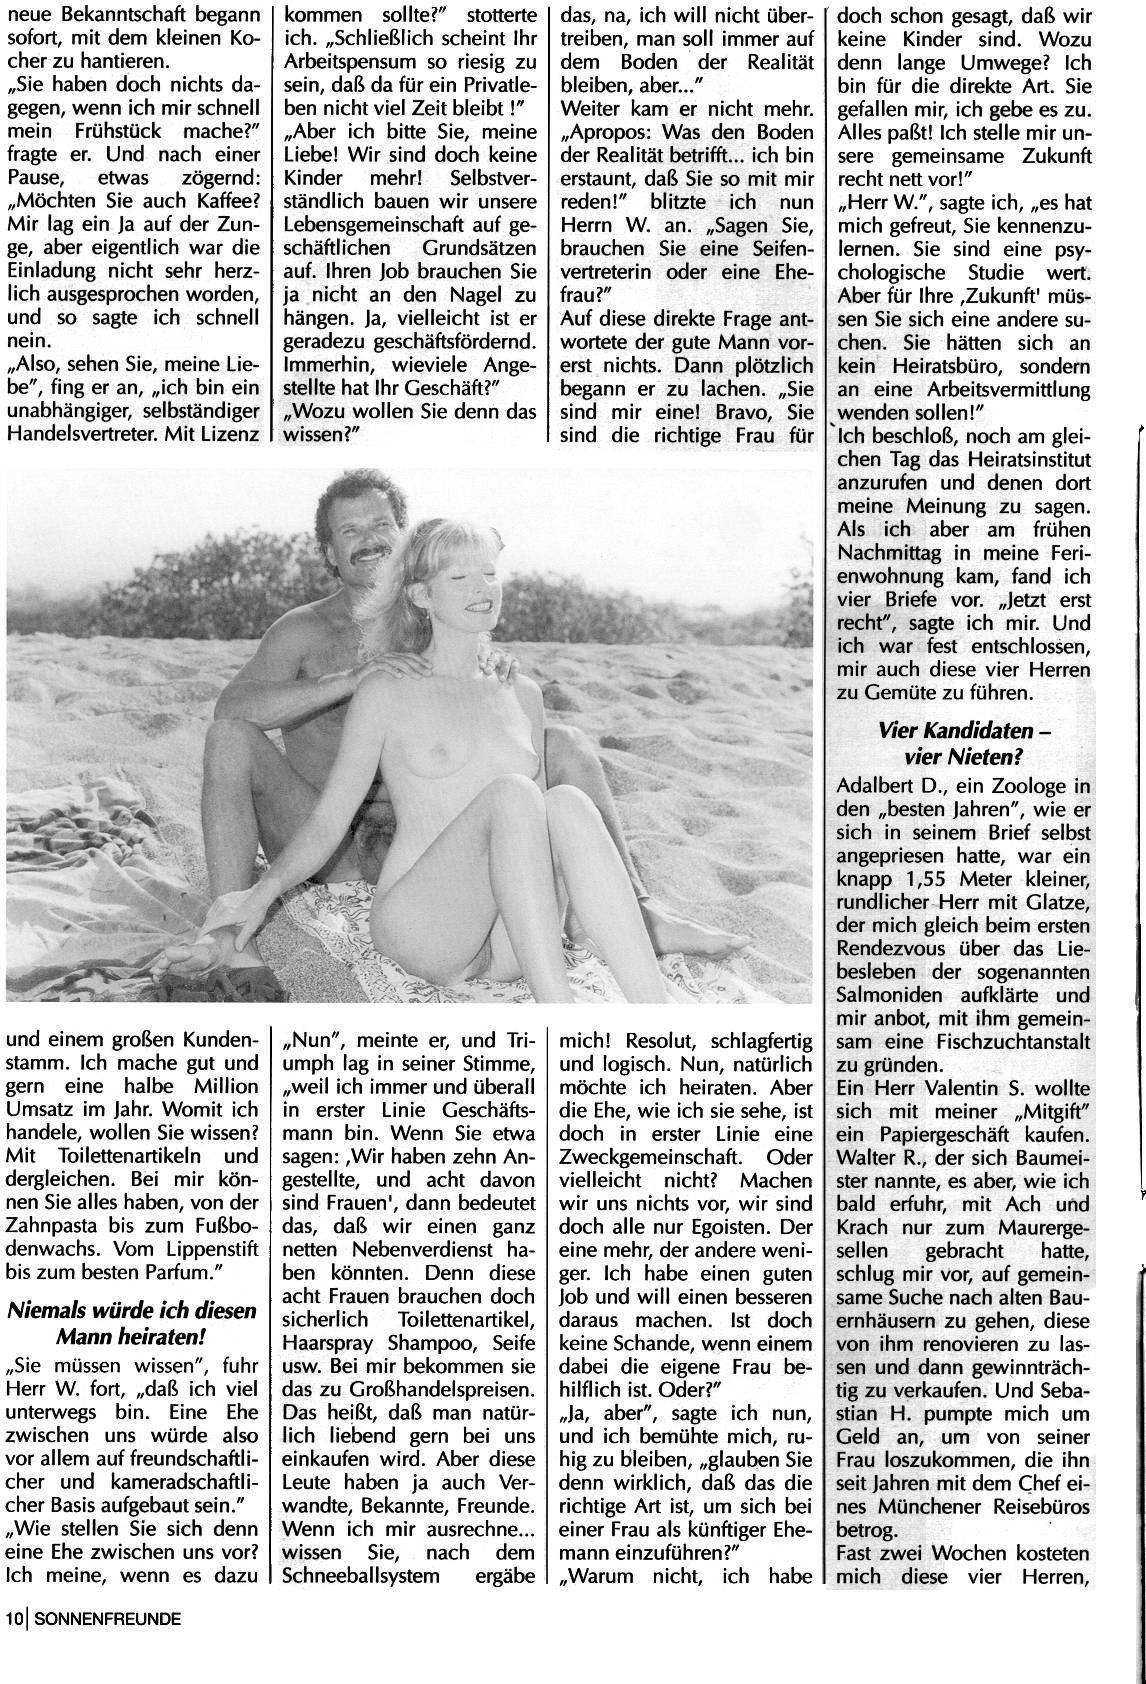 FKK Magazine - Sonnenfreunde 1993 Nr.7 - 1